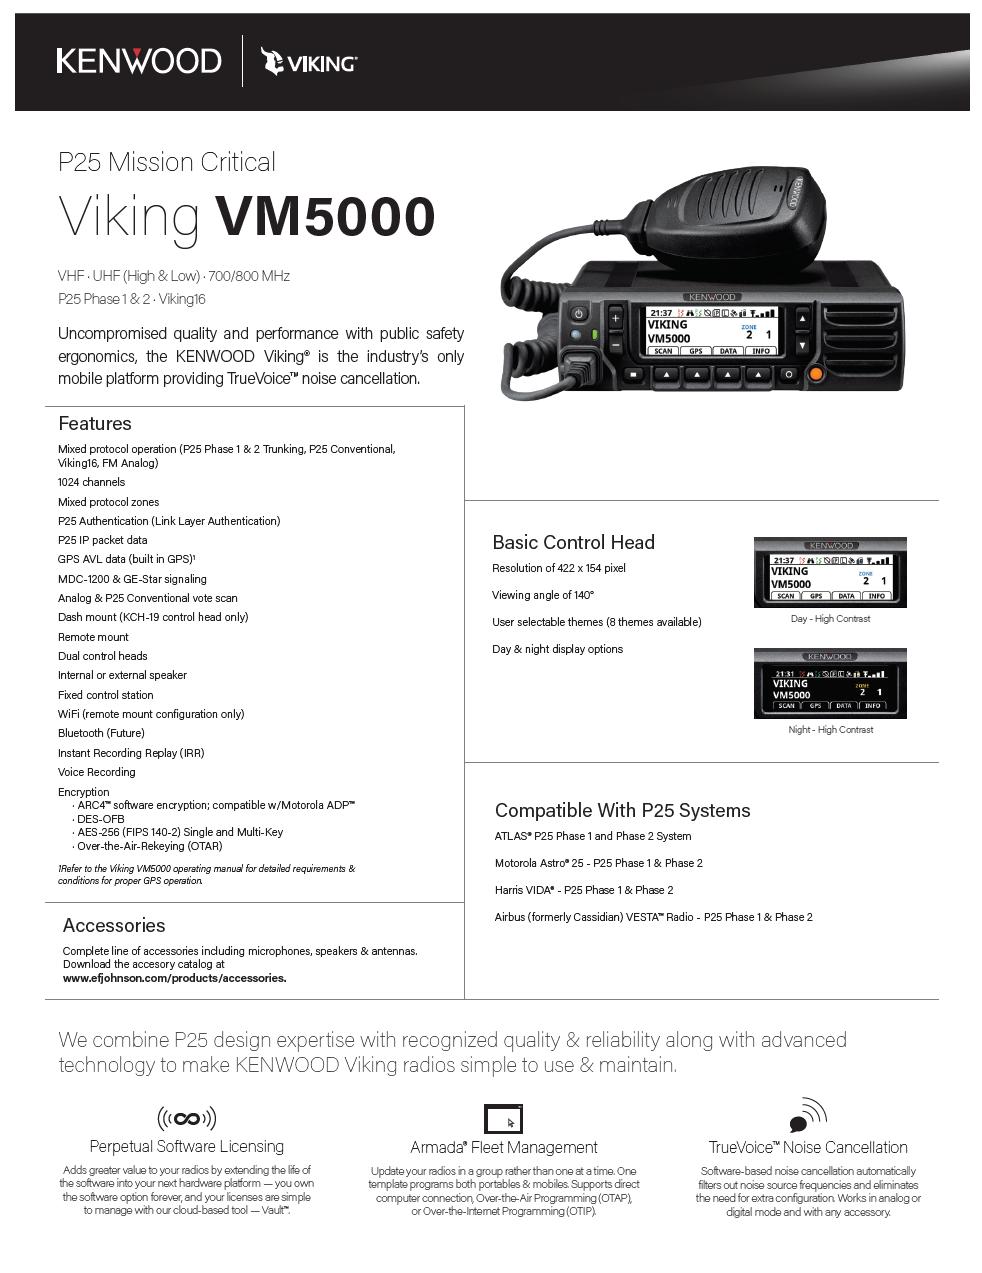 X8A0T KENWOOD Viking Price Guide December 2018 Radio - Base Model VM5730BF VM5000 136-174 MHZ $2,150.00 $ 1,720.00 20% VM5830BF VM5000 450-520 MHZ $2,150.00 $ 1,720.00 20% VM5830BF2 VM5000 380-470 MHZ $2,150.